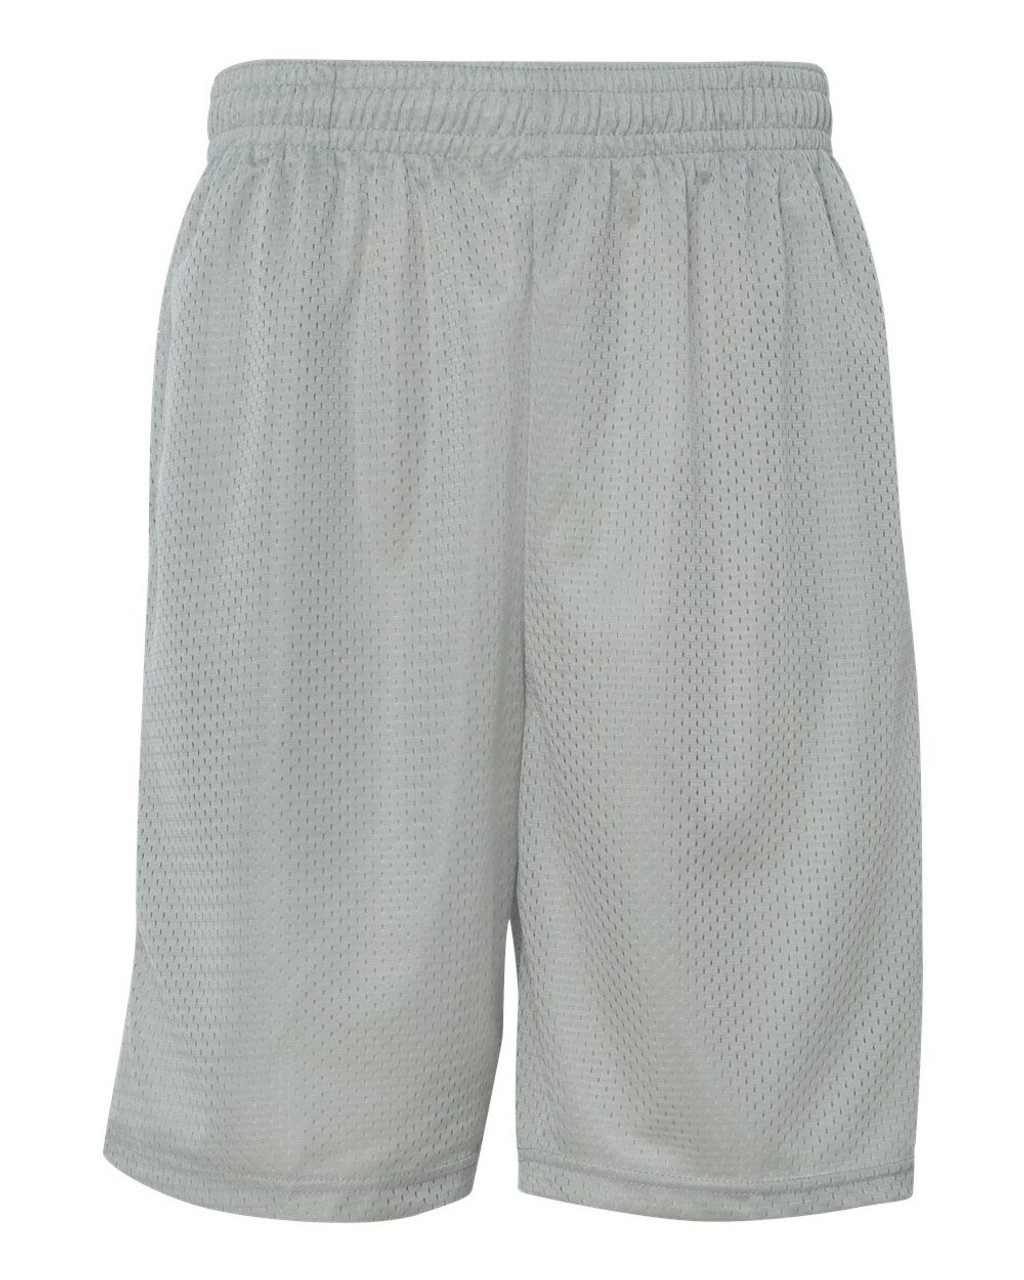 Custom Pro Mesh 9" Shorts with Pockets - 7219